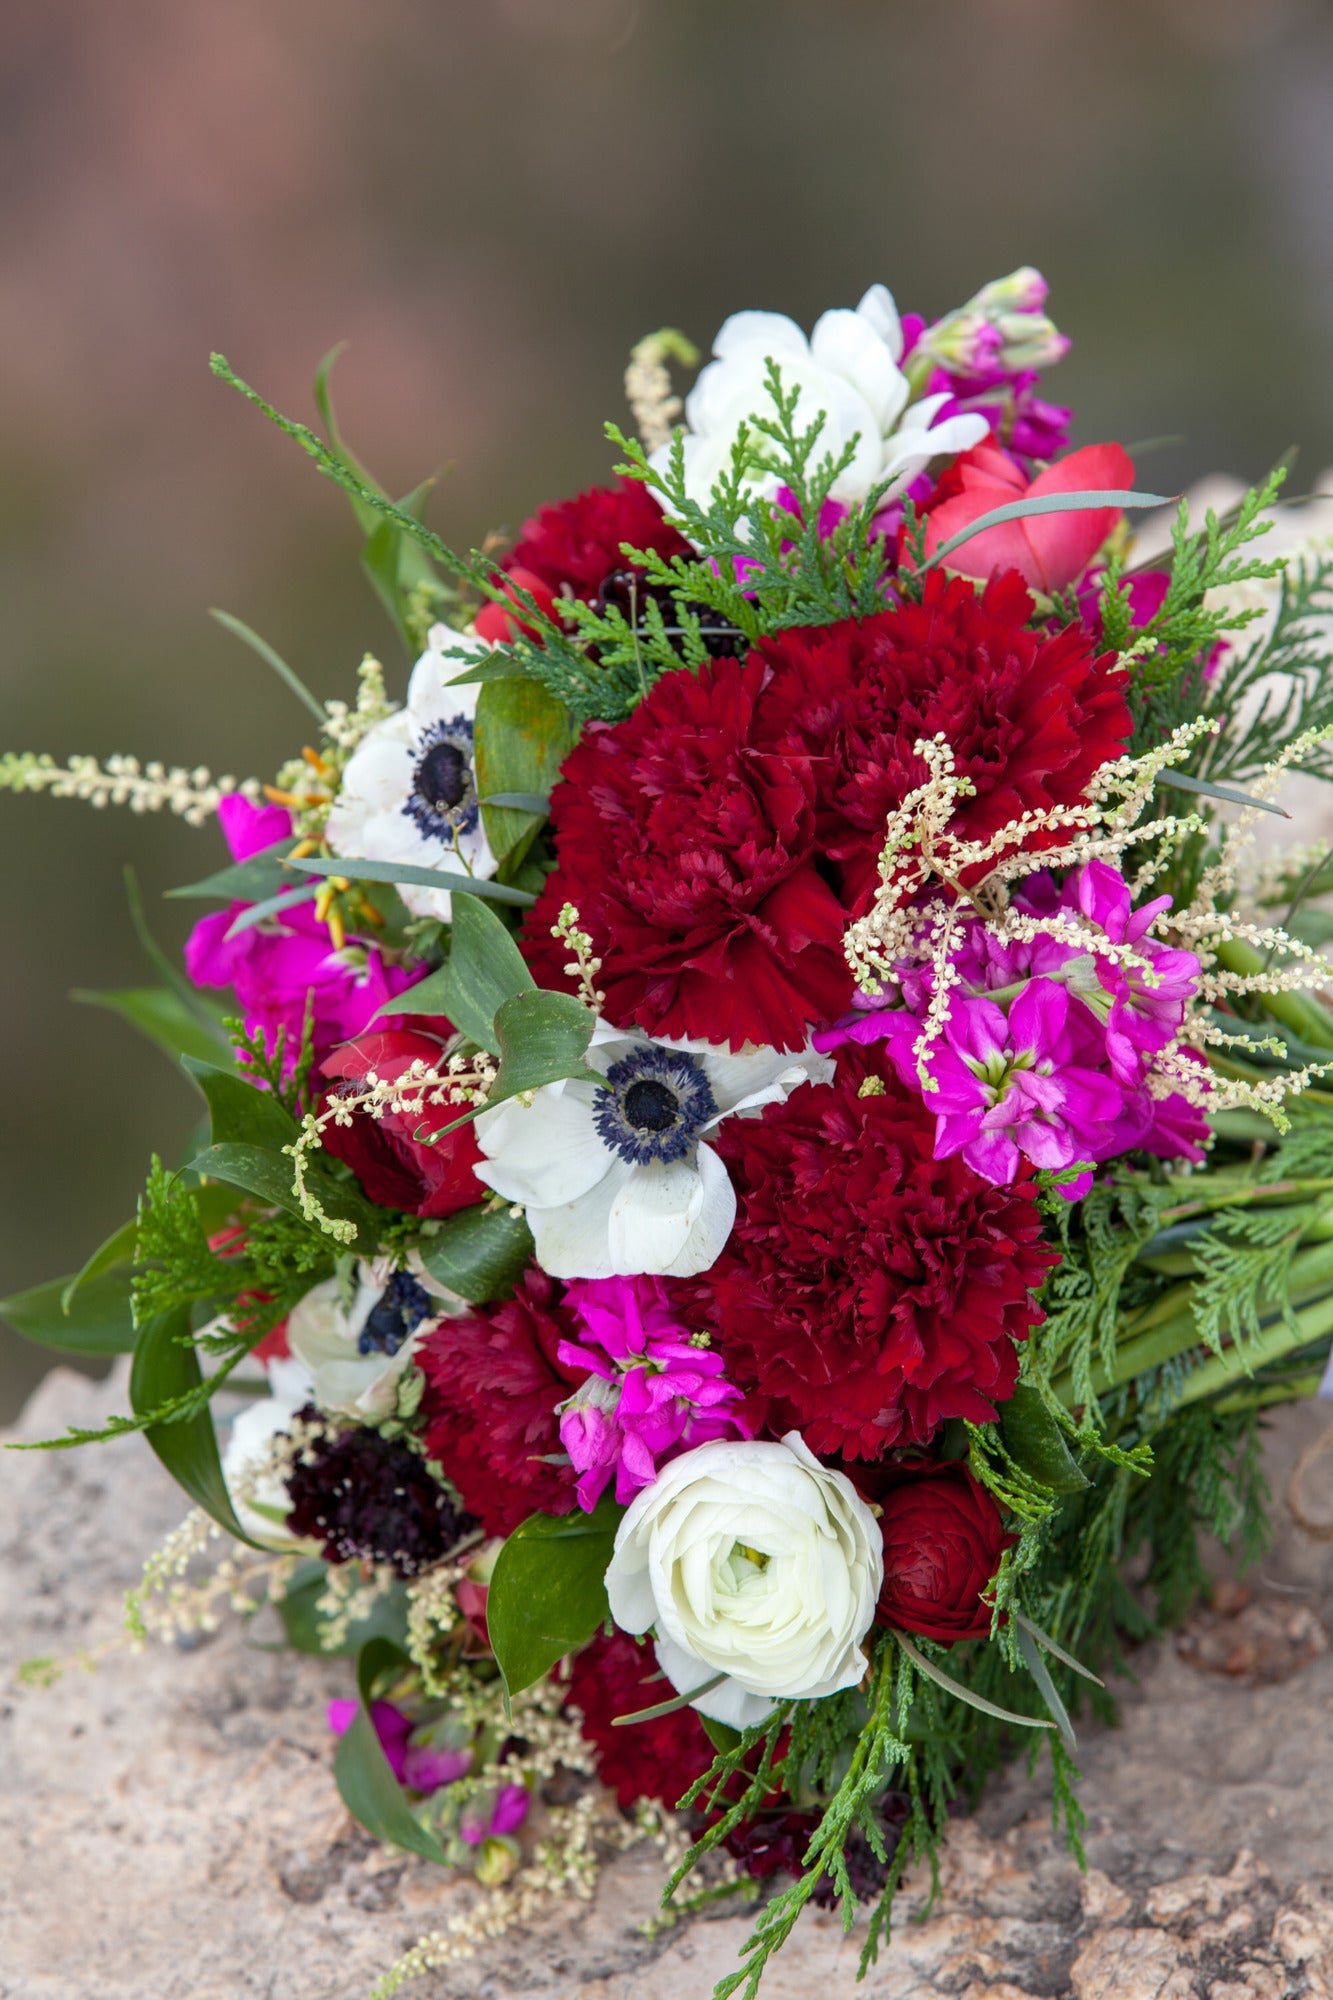 Custom Designed Bridal Bouquet